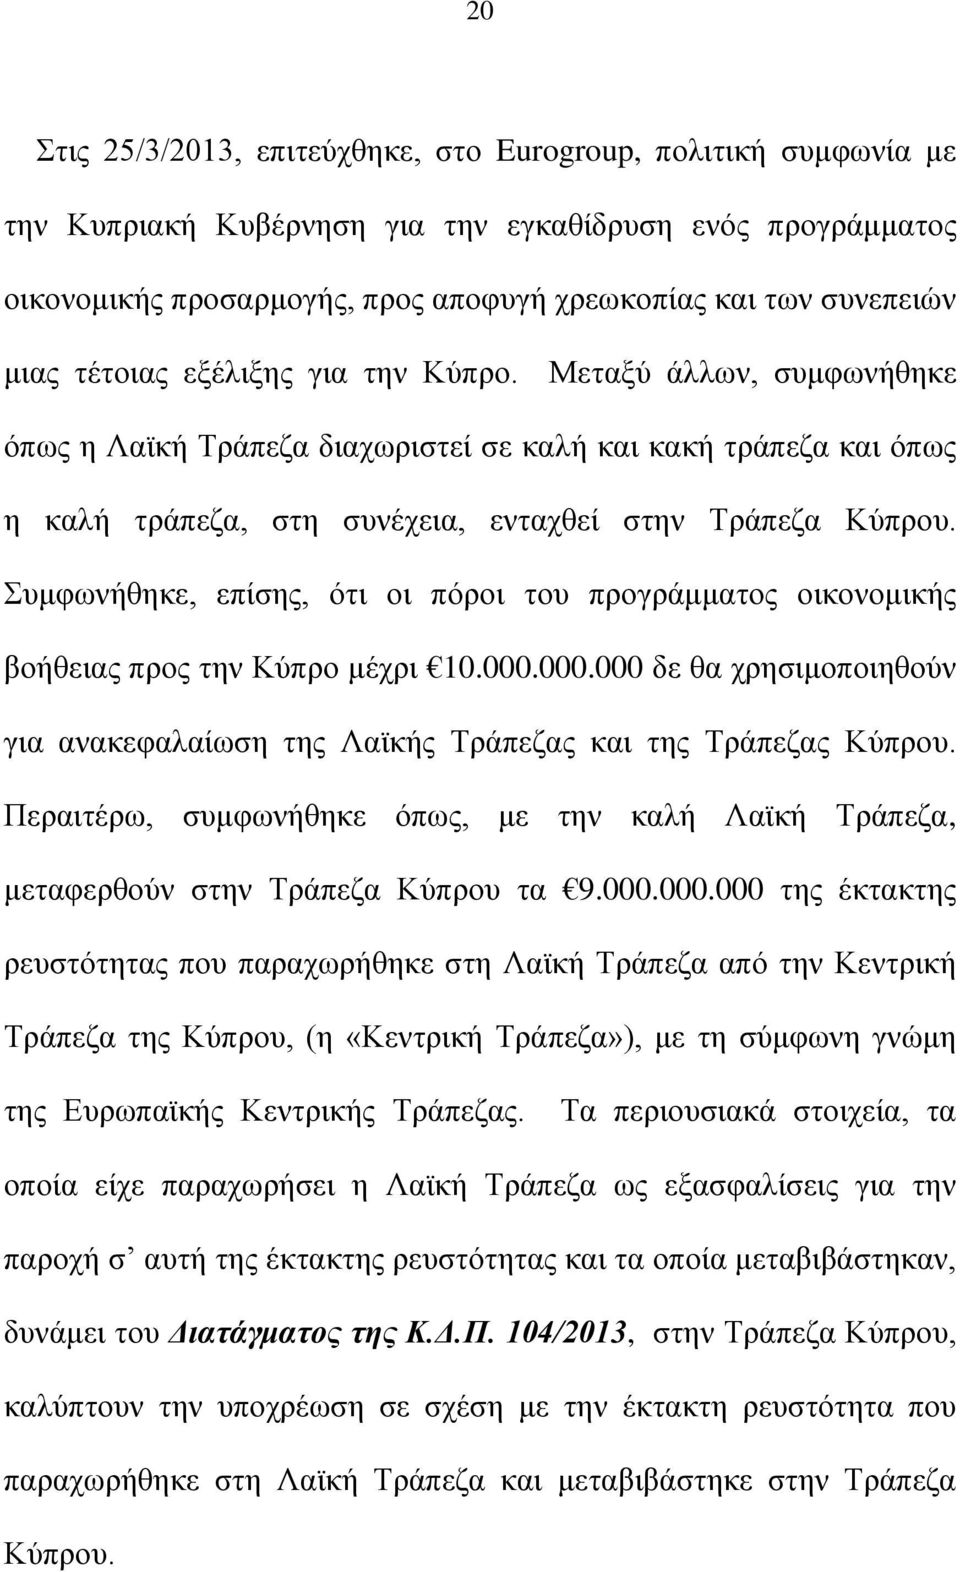 Συμφωνήθηκε, επίσης, ότι οι πόροι του προγράμματος οικονομικής βοήθειας προς την Κύπρο μέχρι 10.000.000.000 δε θα χρησιμοποιηθούν για ανακεφαλαίωση της Λαϊκής Τράπεζας και της Τράπεζας Κύπρου.